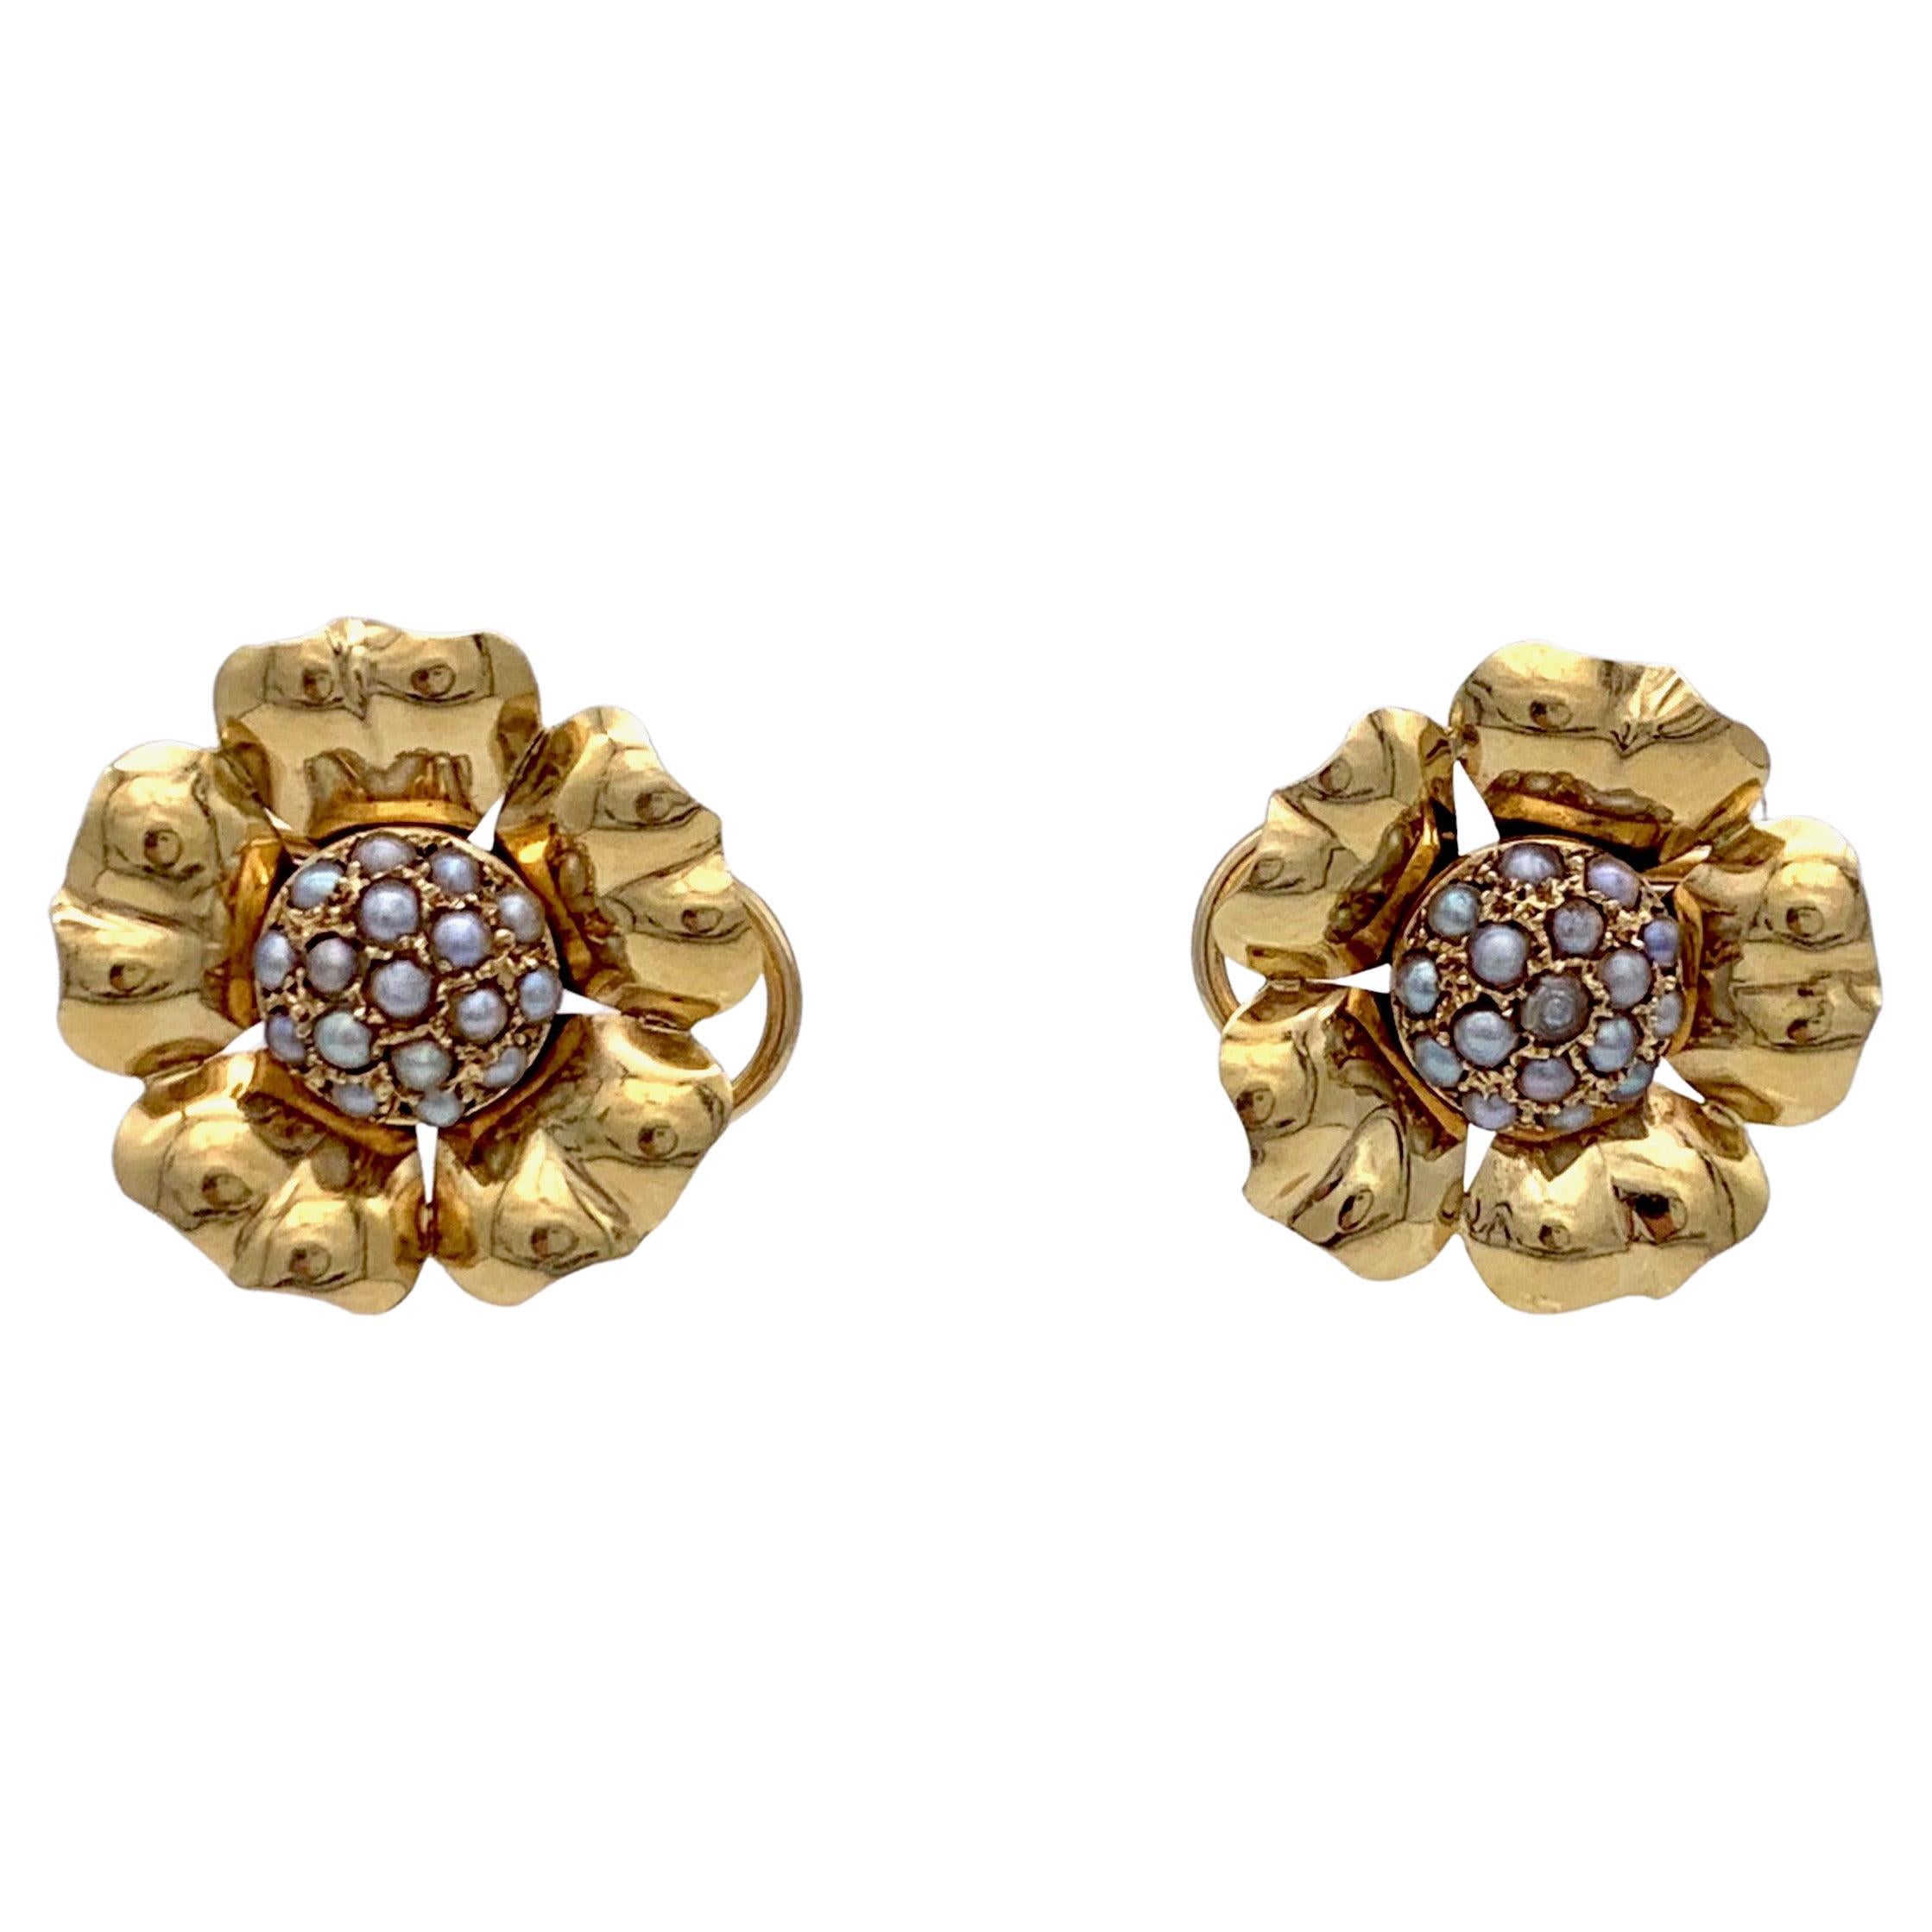 Retro 18 Karat Gold Clip on Earrings Flowers Pearls